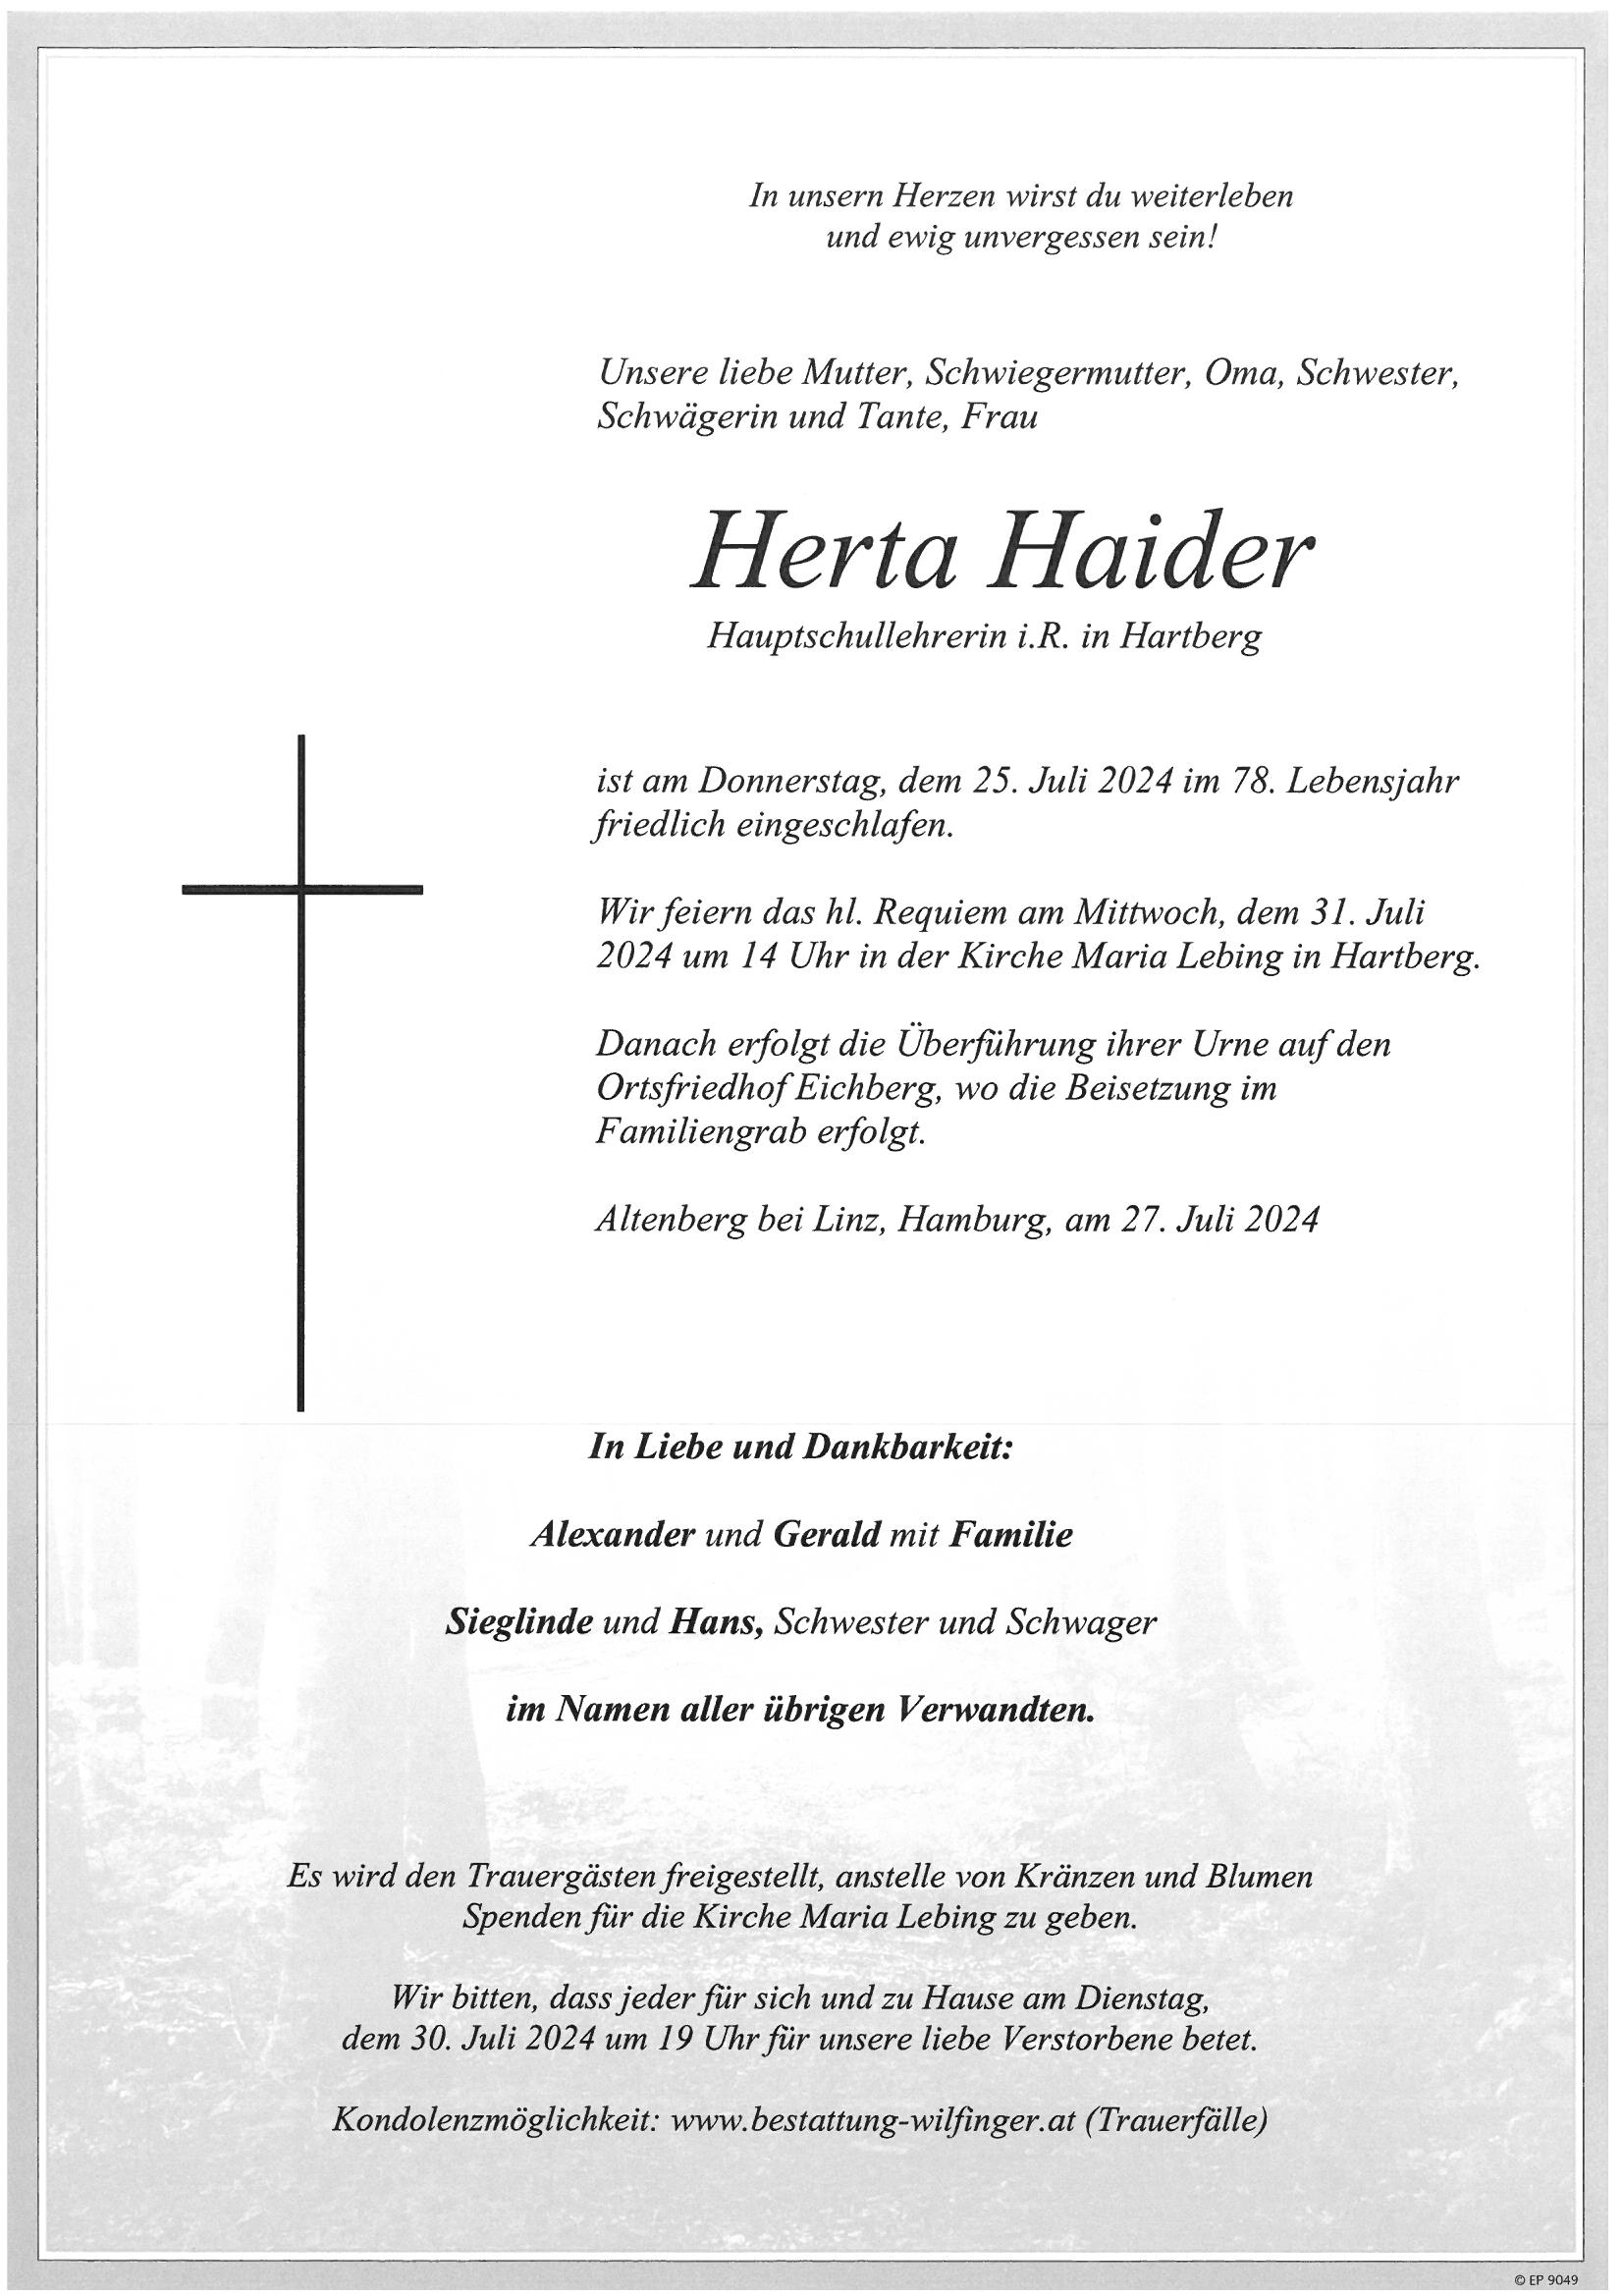 Herta Haider, Hartberg